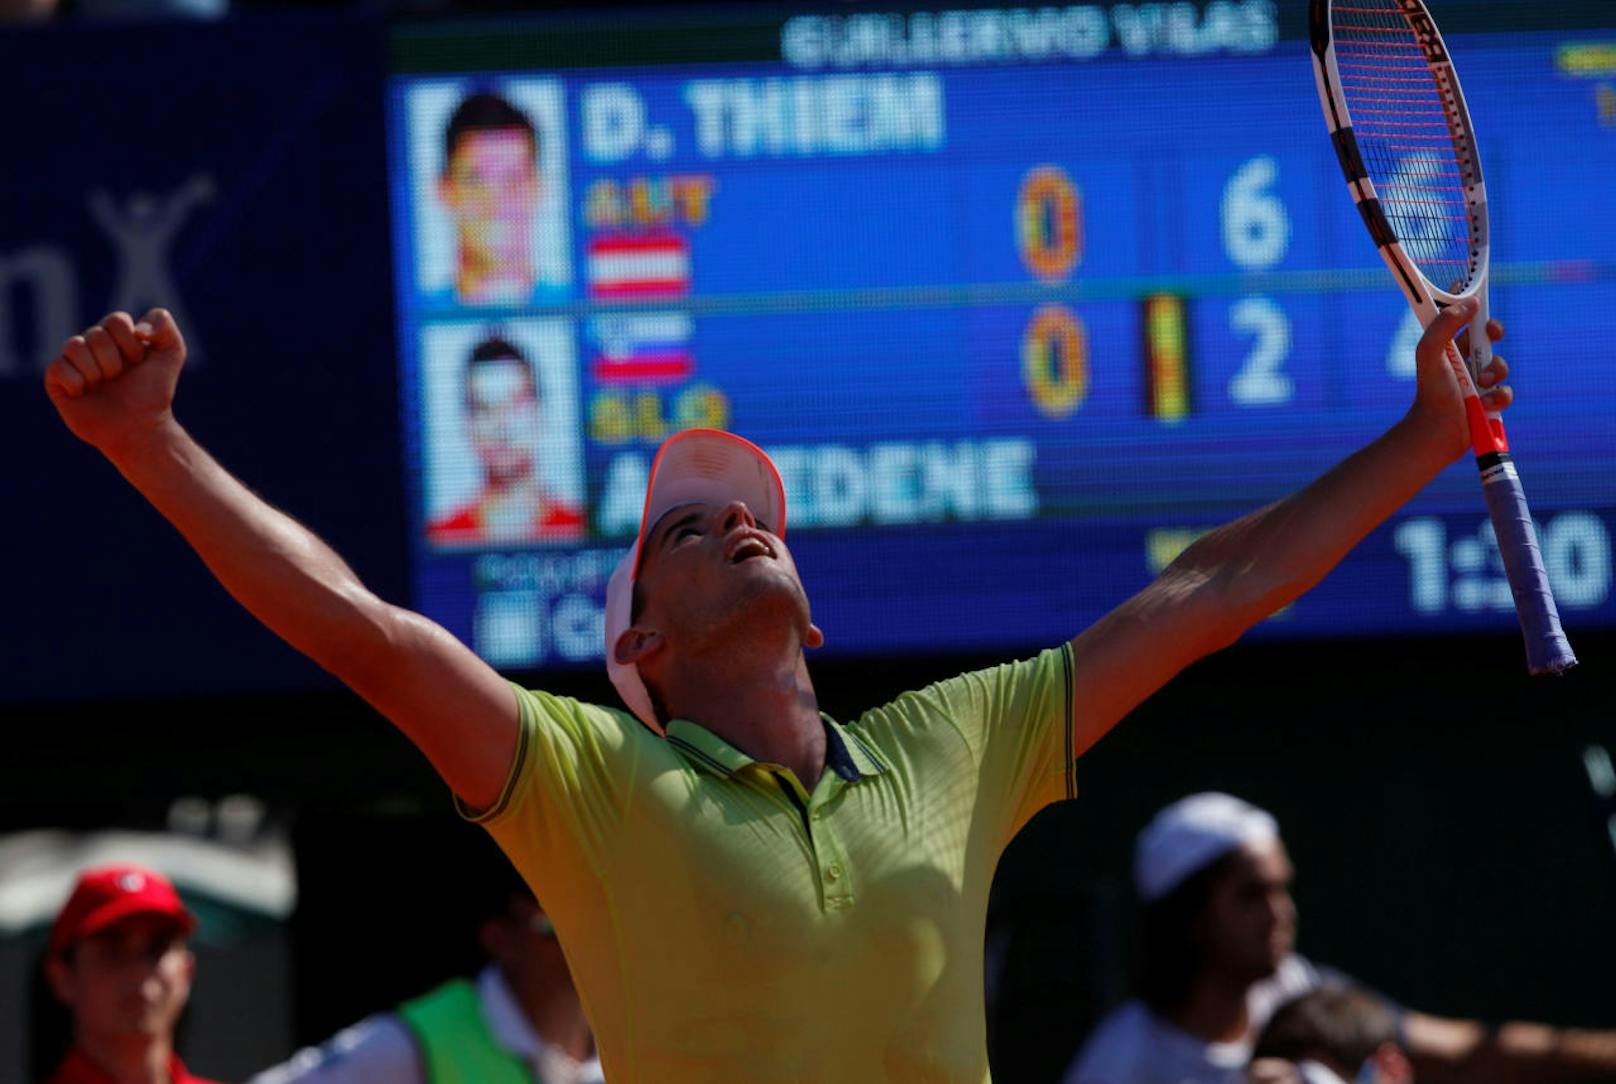 Beflügelt von der Liebe startet Thiem stark ins Jahr 2018. In Buenos Aires holte er im Februar den ersten Turniersieg.